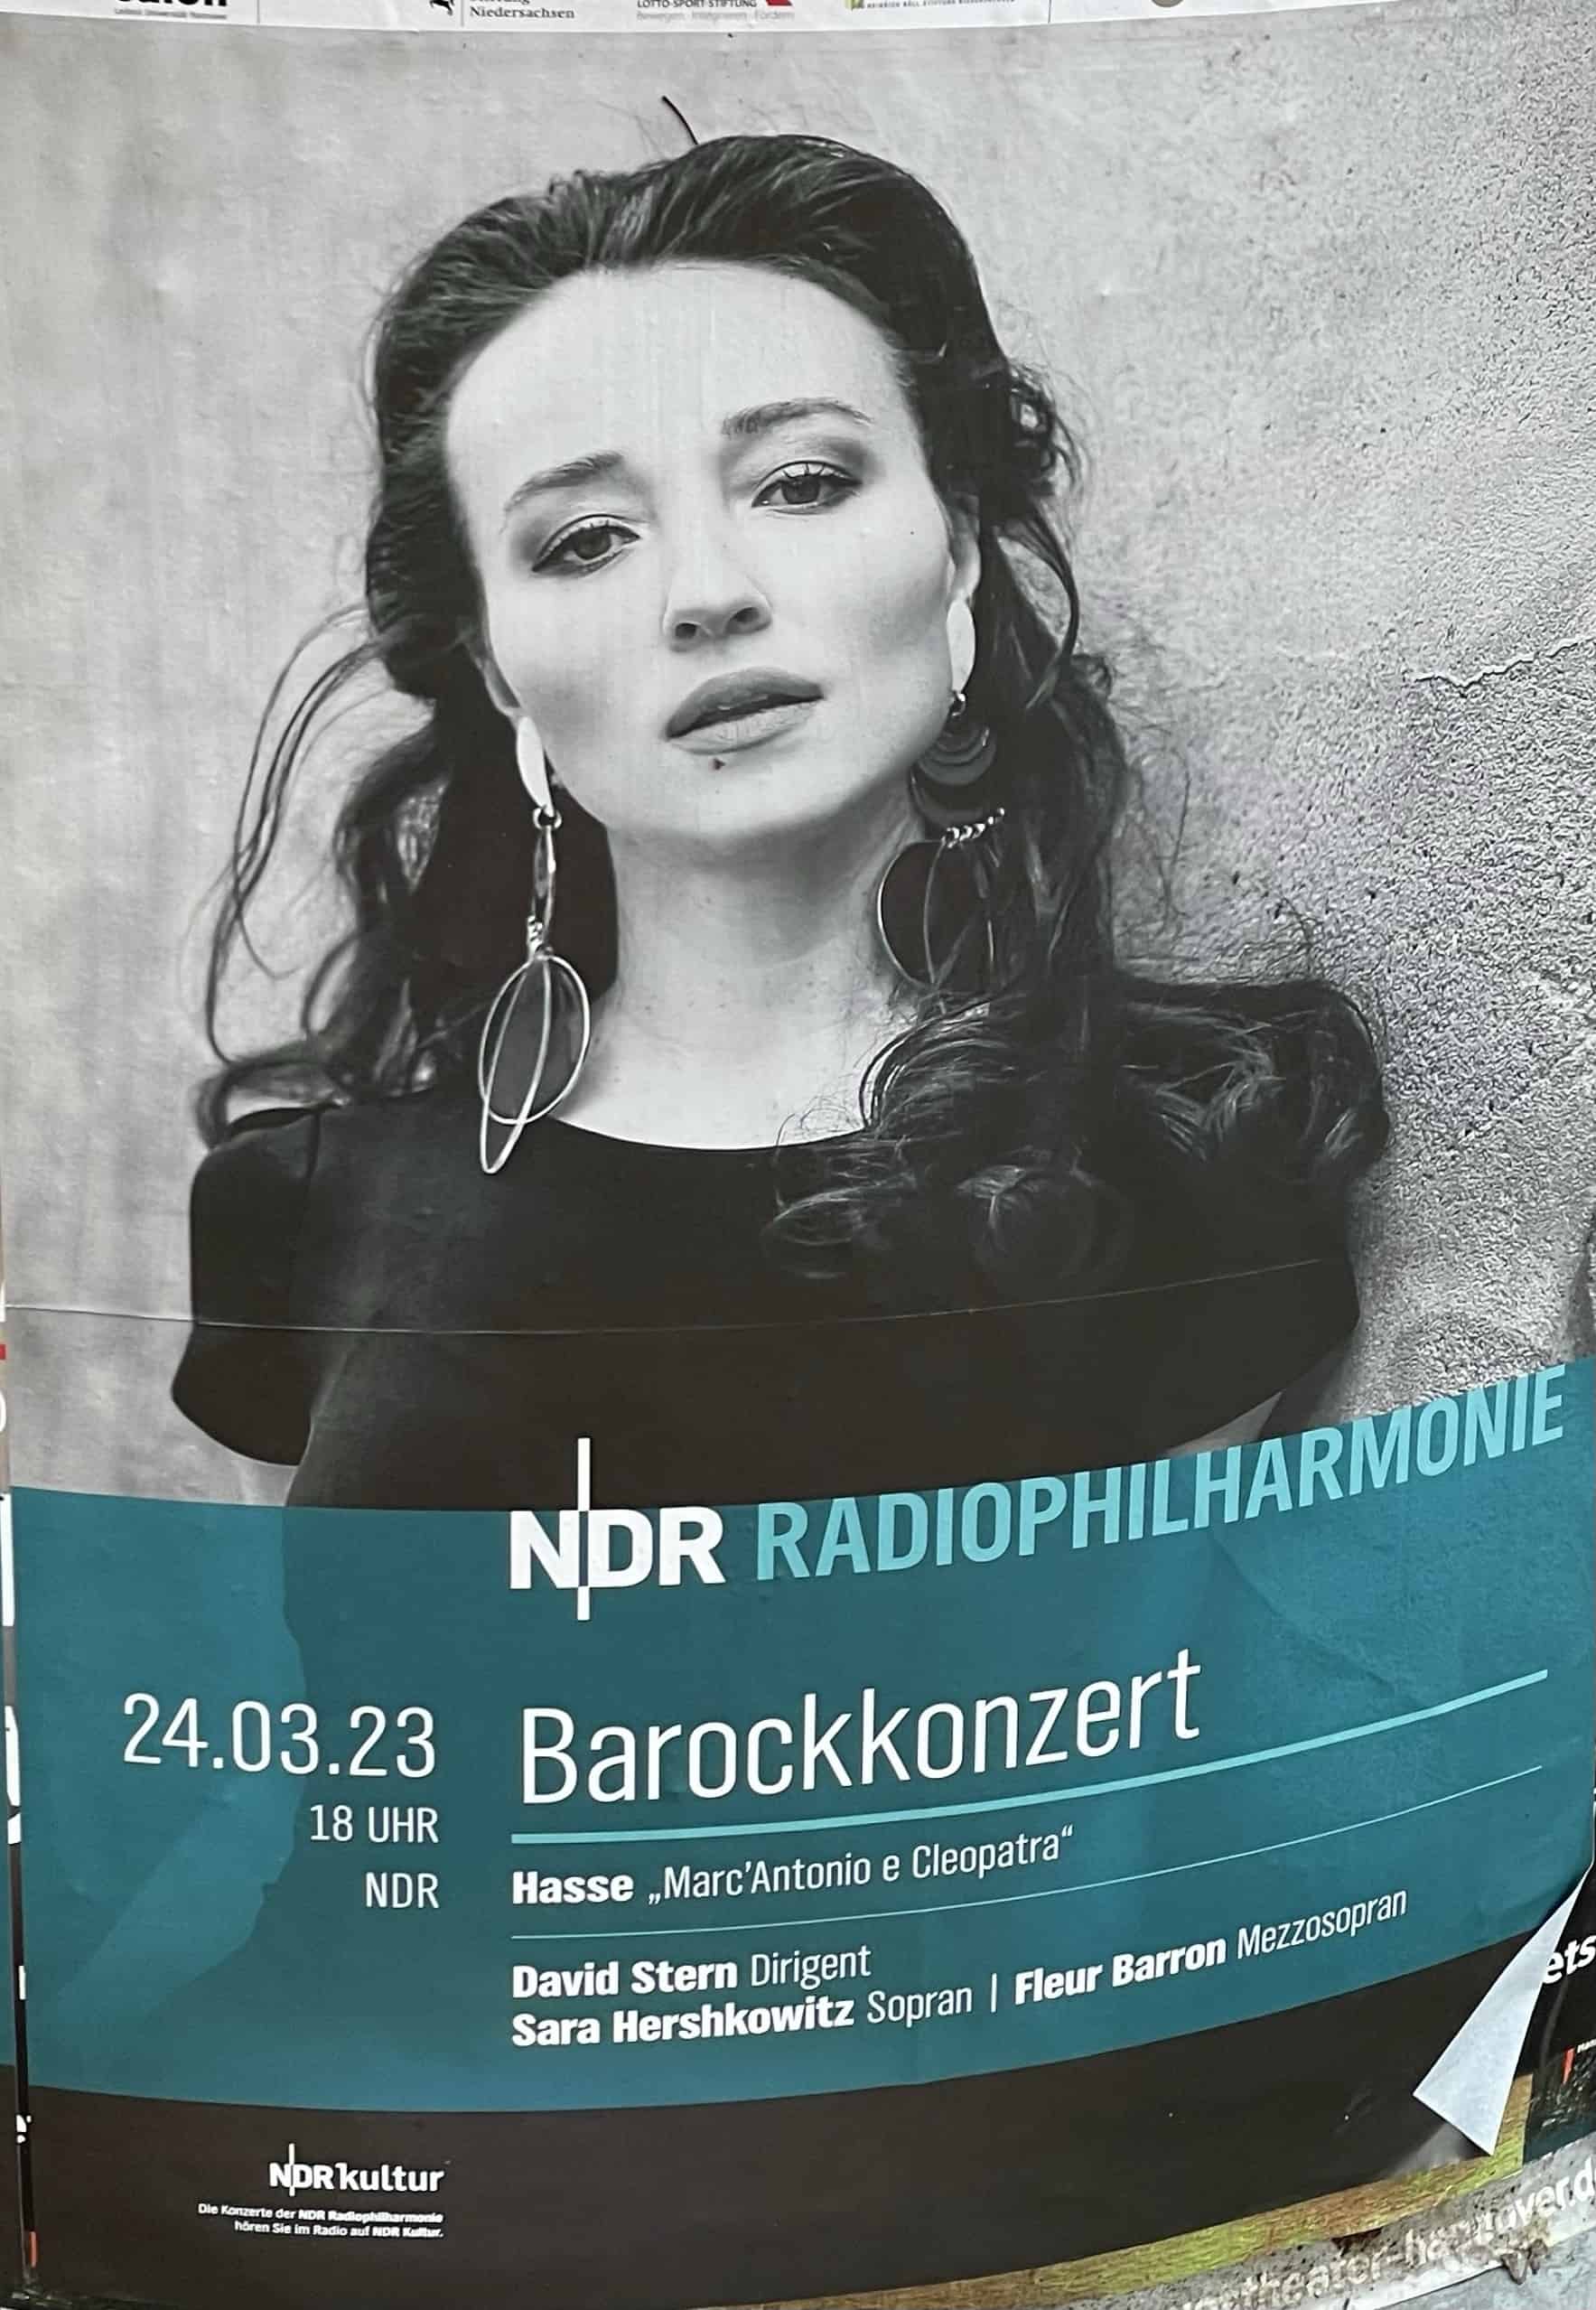 NDR Radiophilharmonie mit einem Barockkonzert